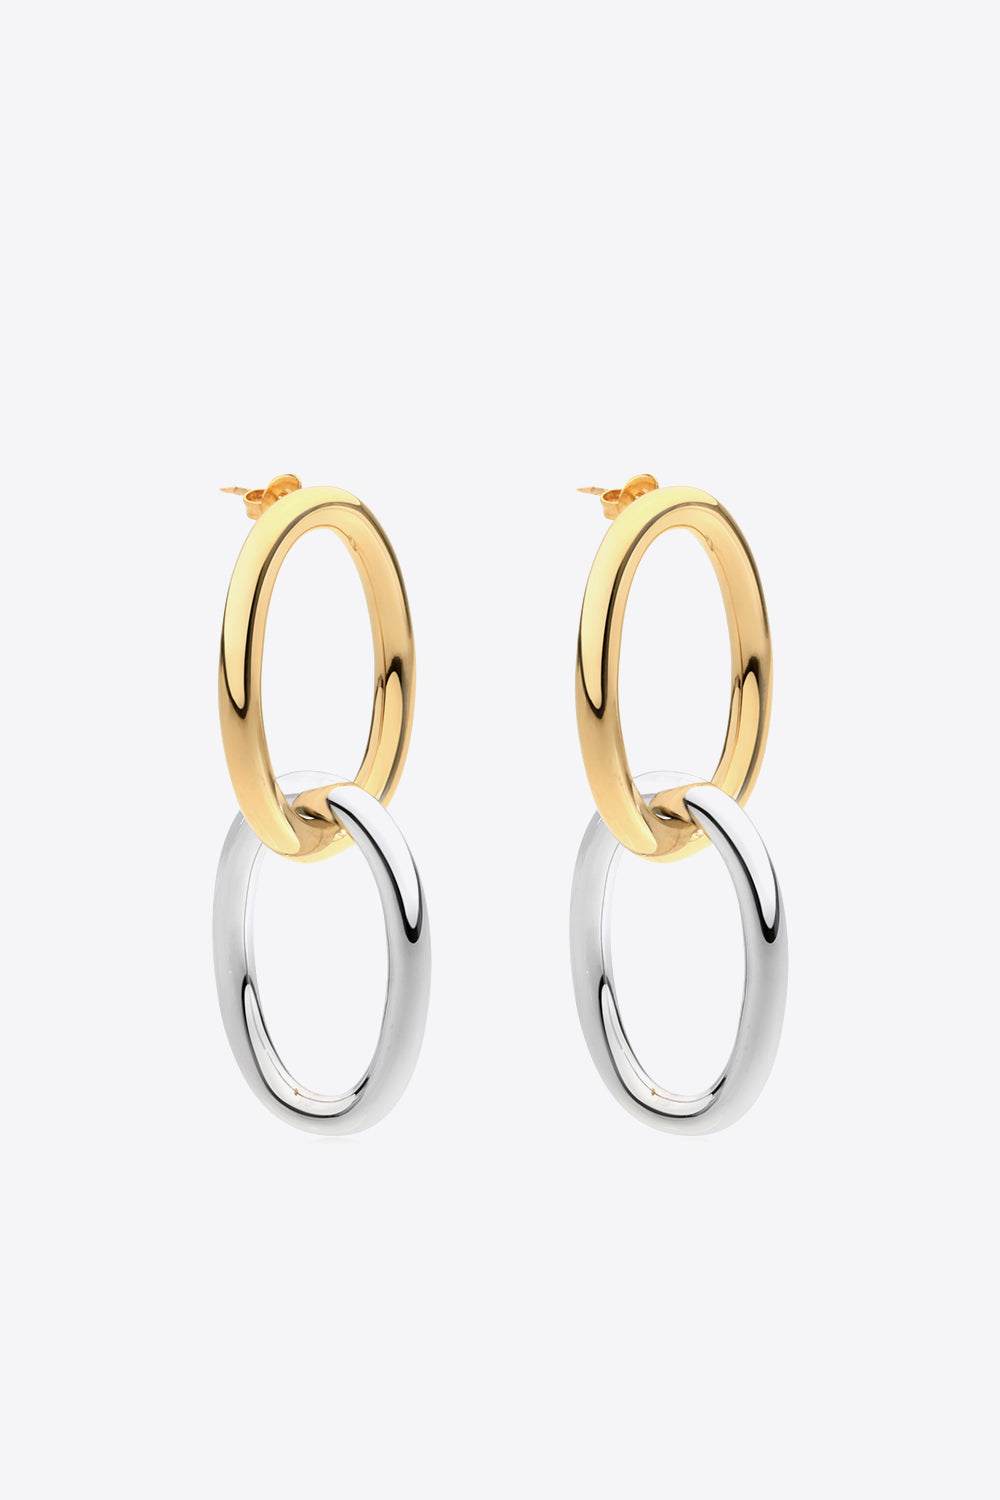 Two-Tone Double Hoop Earrings - Earrings - FITGGINS